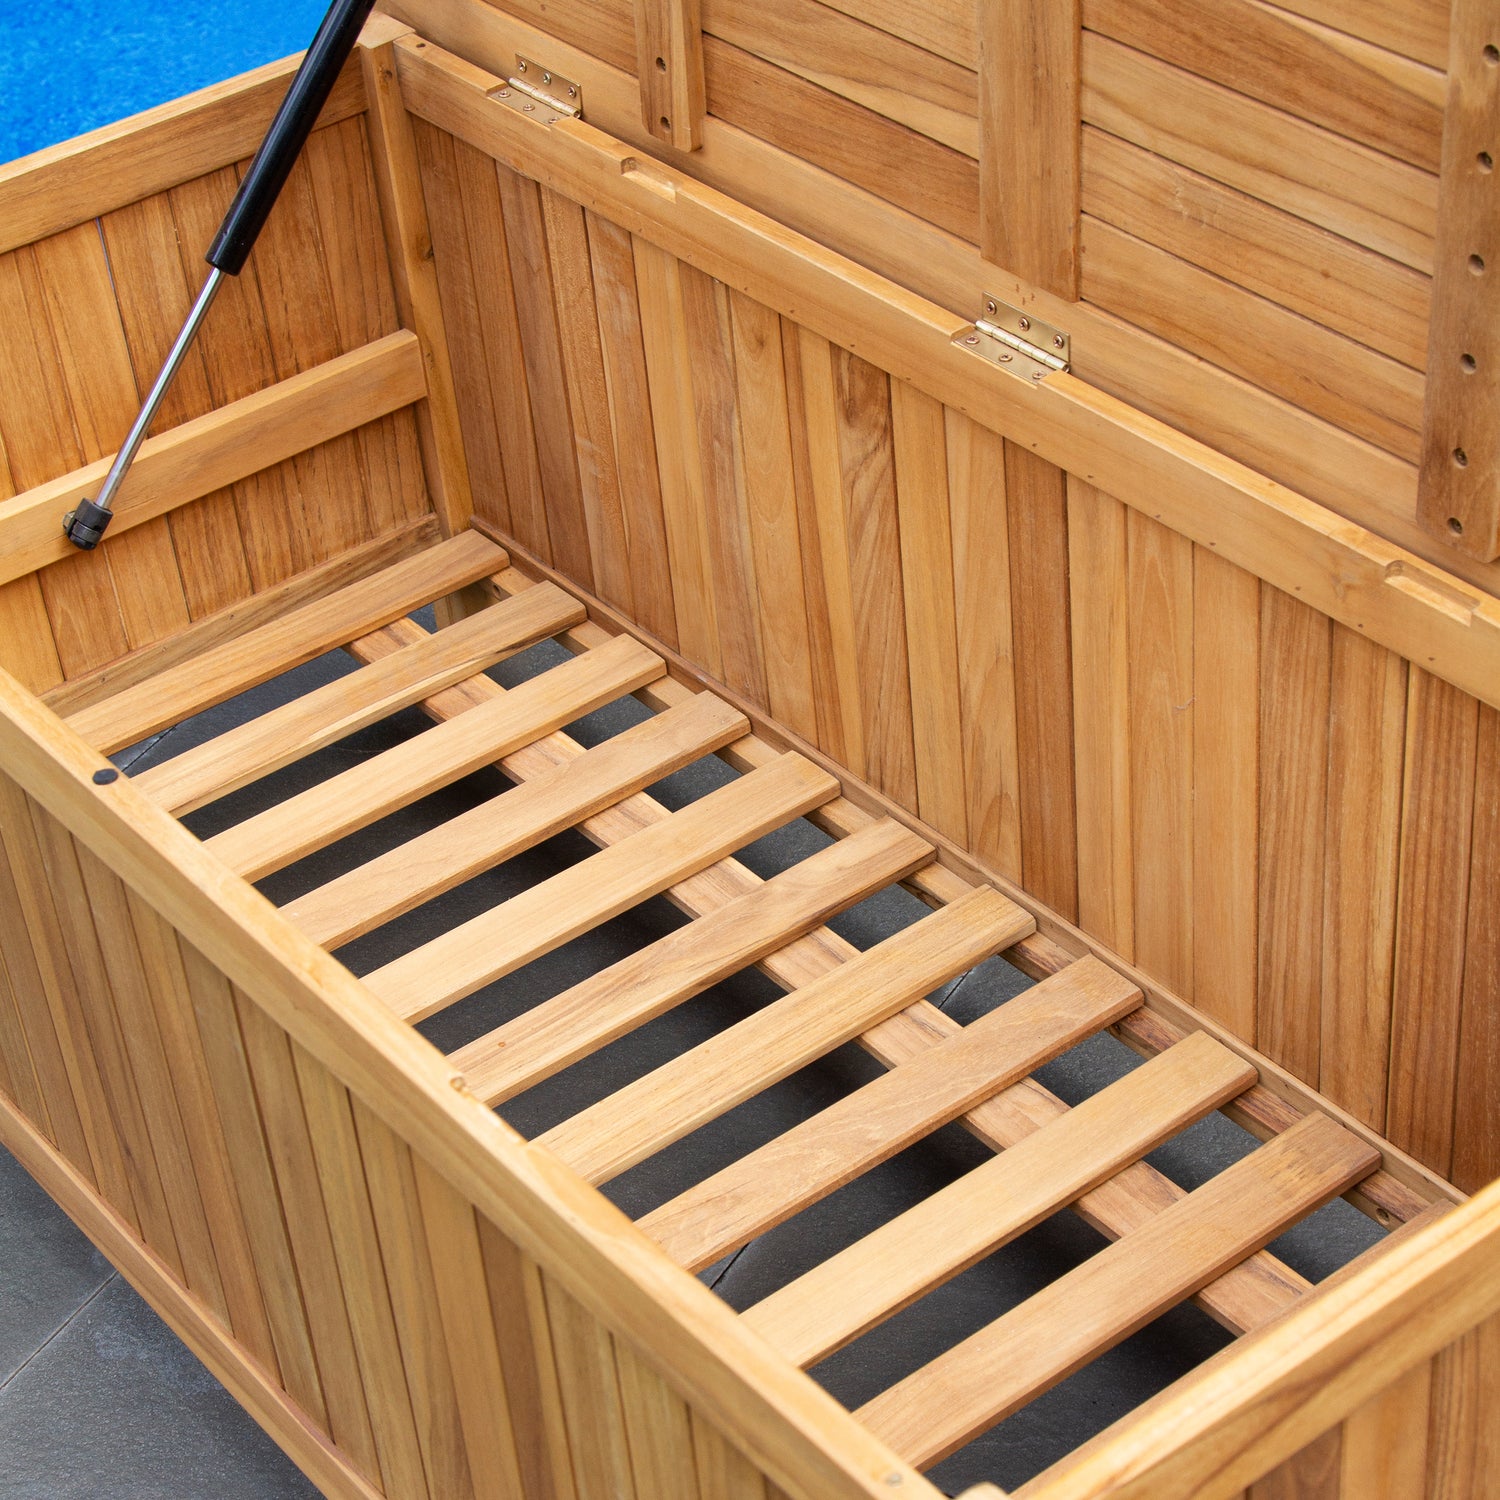 Richmond Teak Wood 48 Inch Outdoor Storage Deck Box